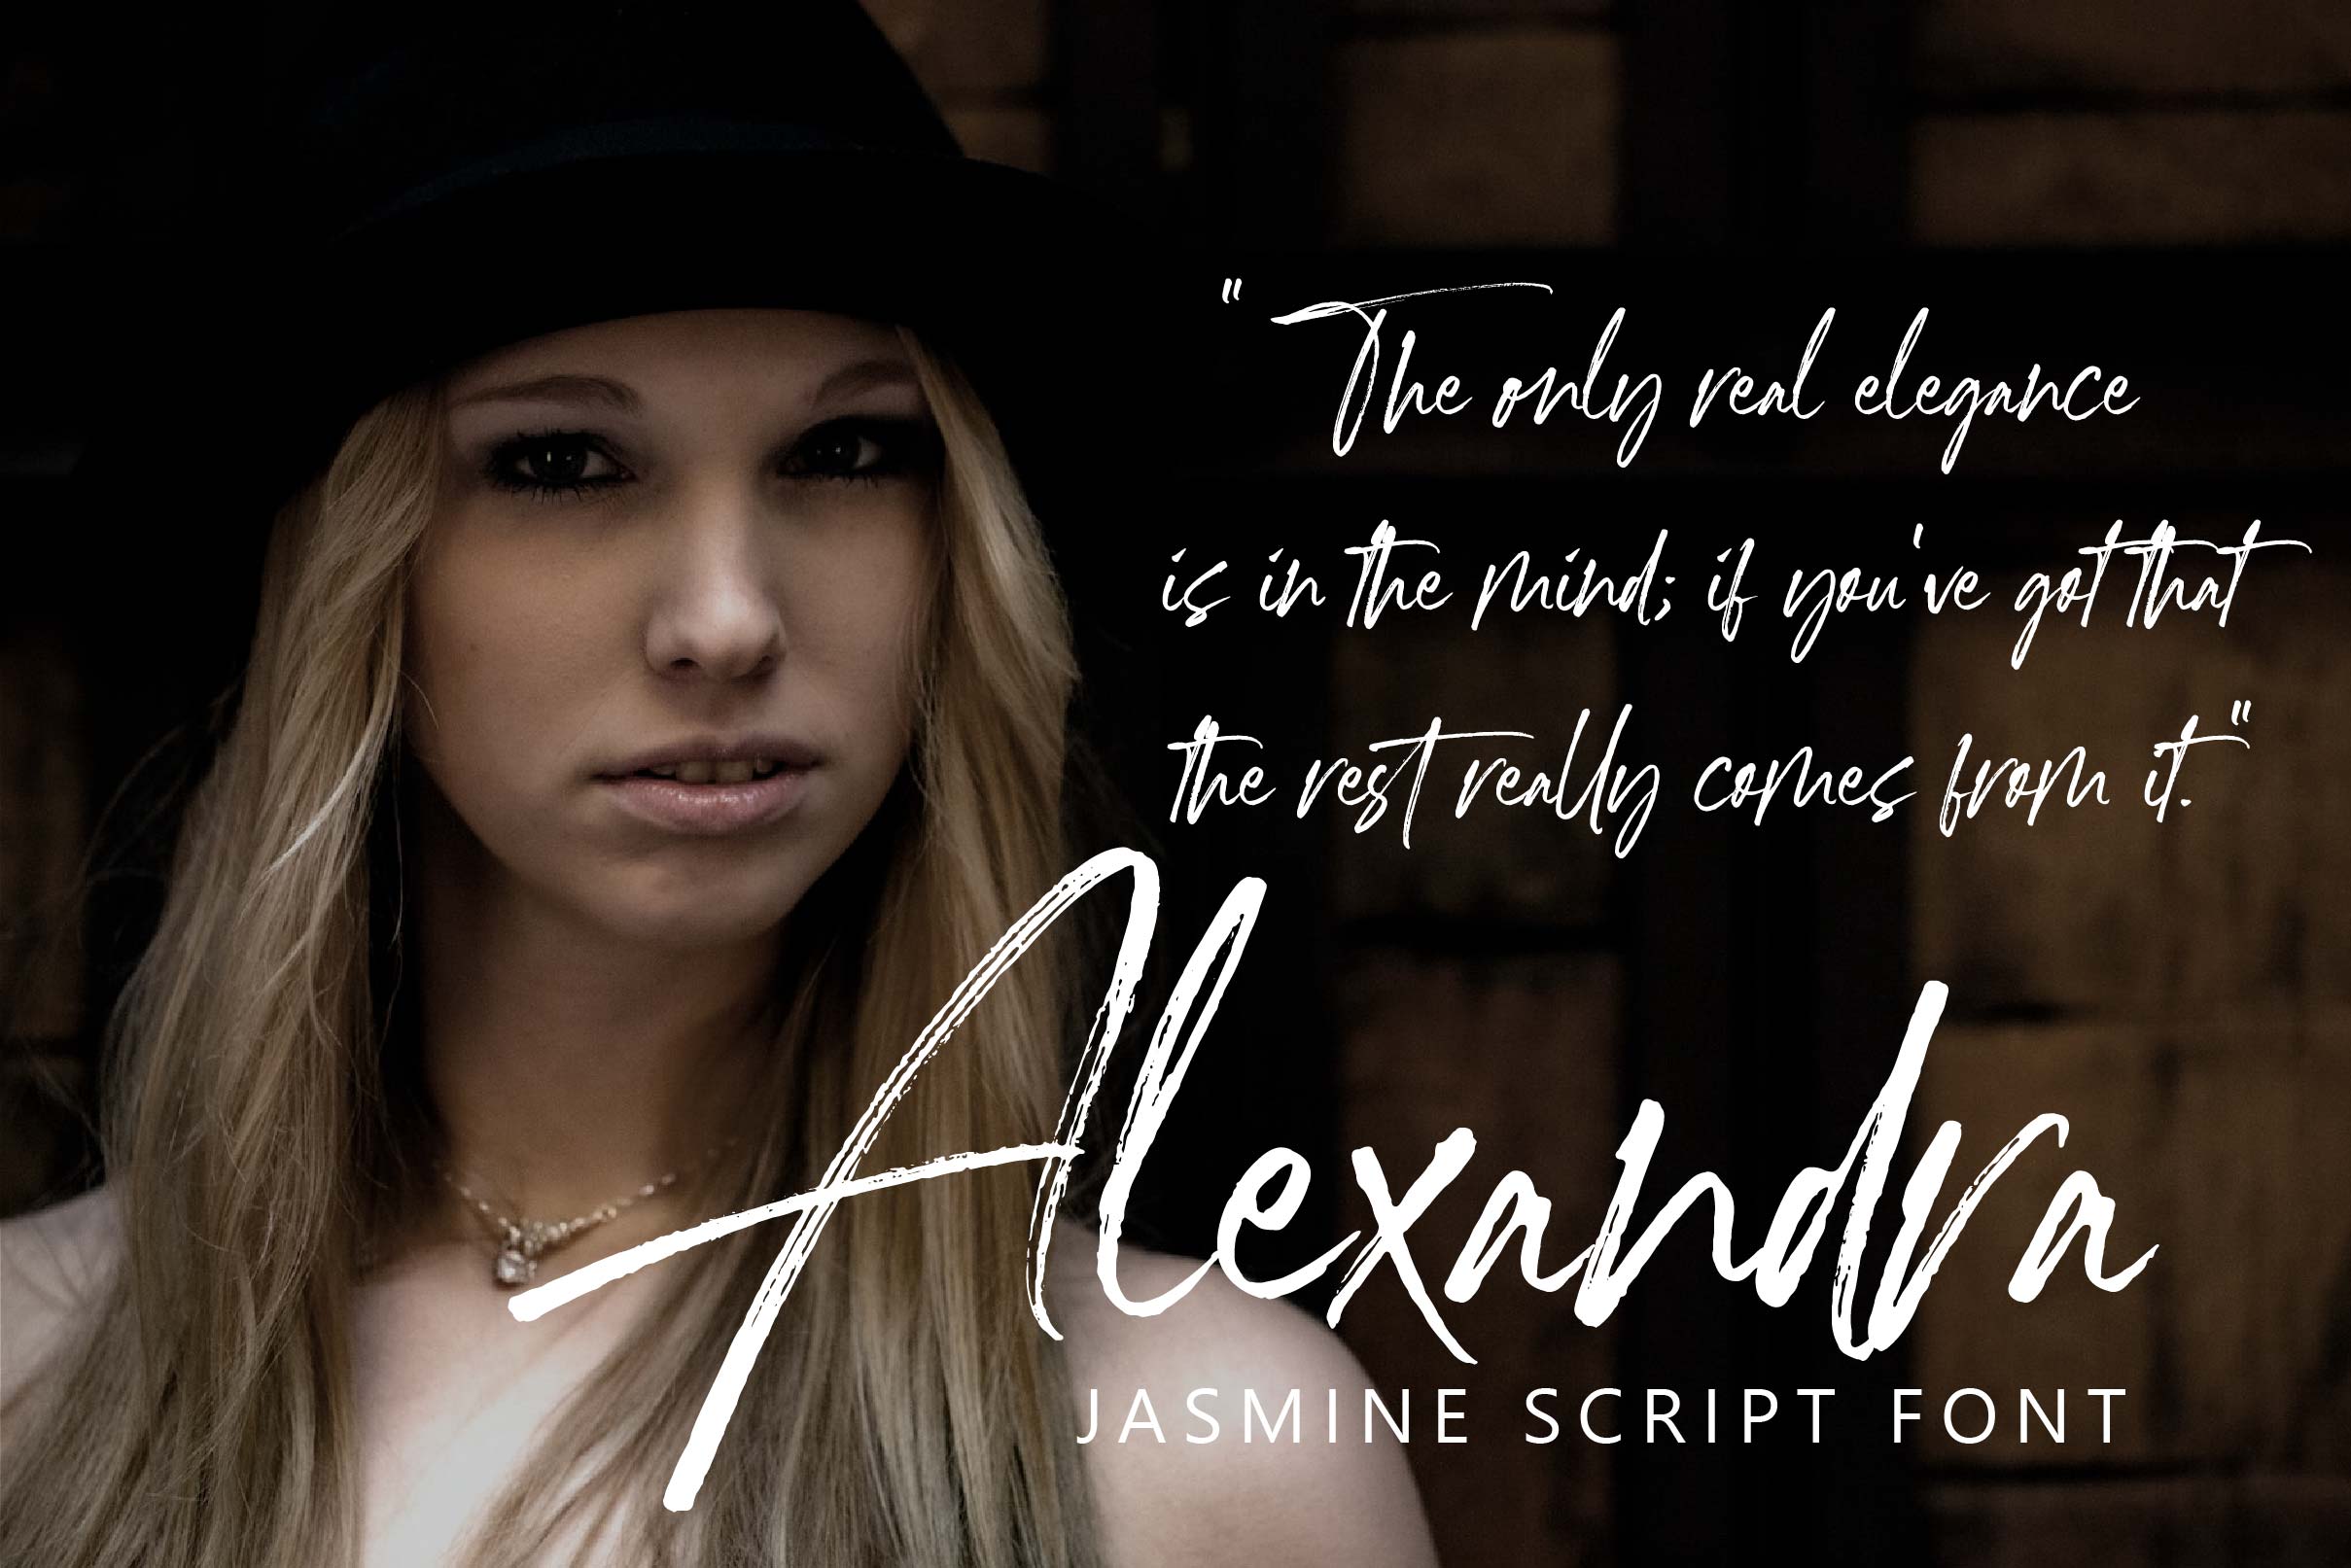 Jasmine Brush Script